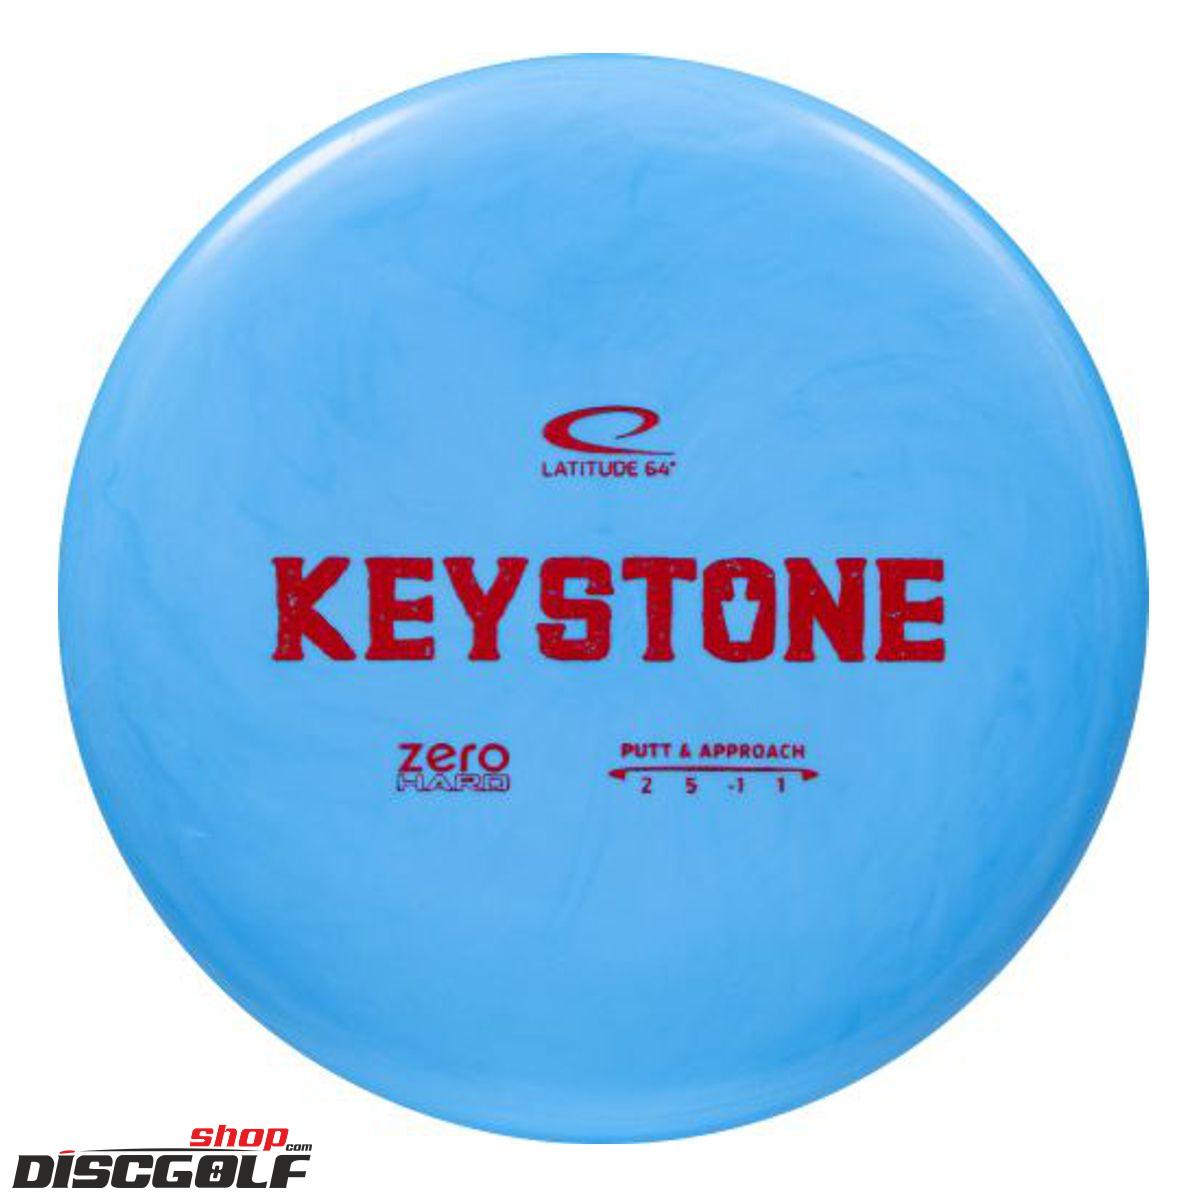 Latitude 64° Keystone Zero Hard 2021 (discgolf)